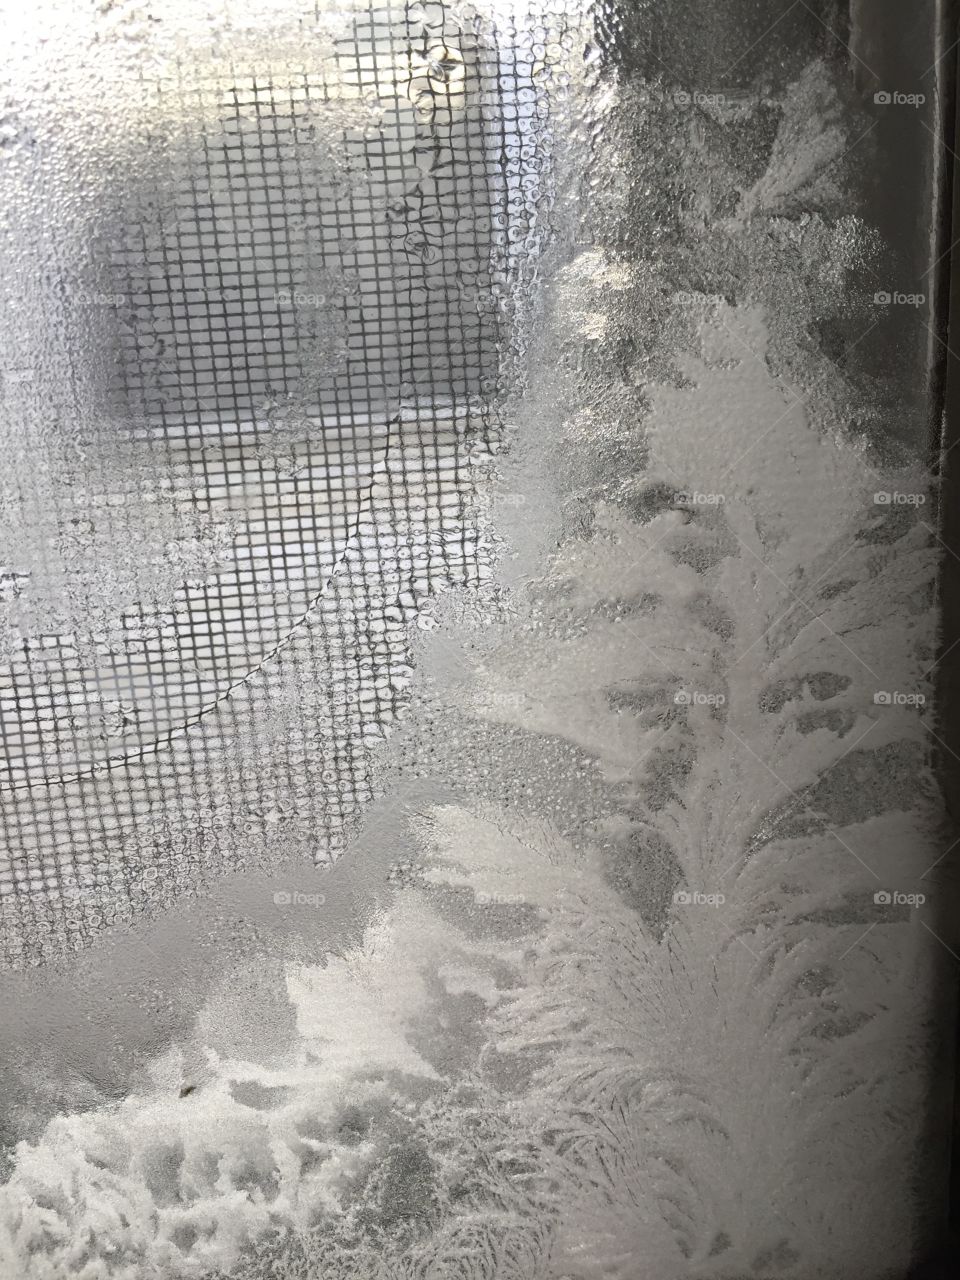 Frost on the window. Looks like a tree.